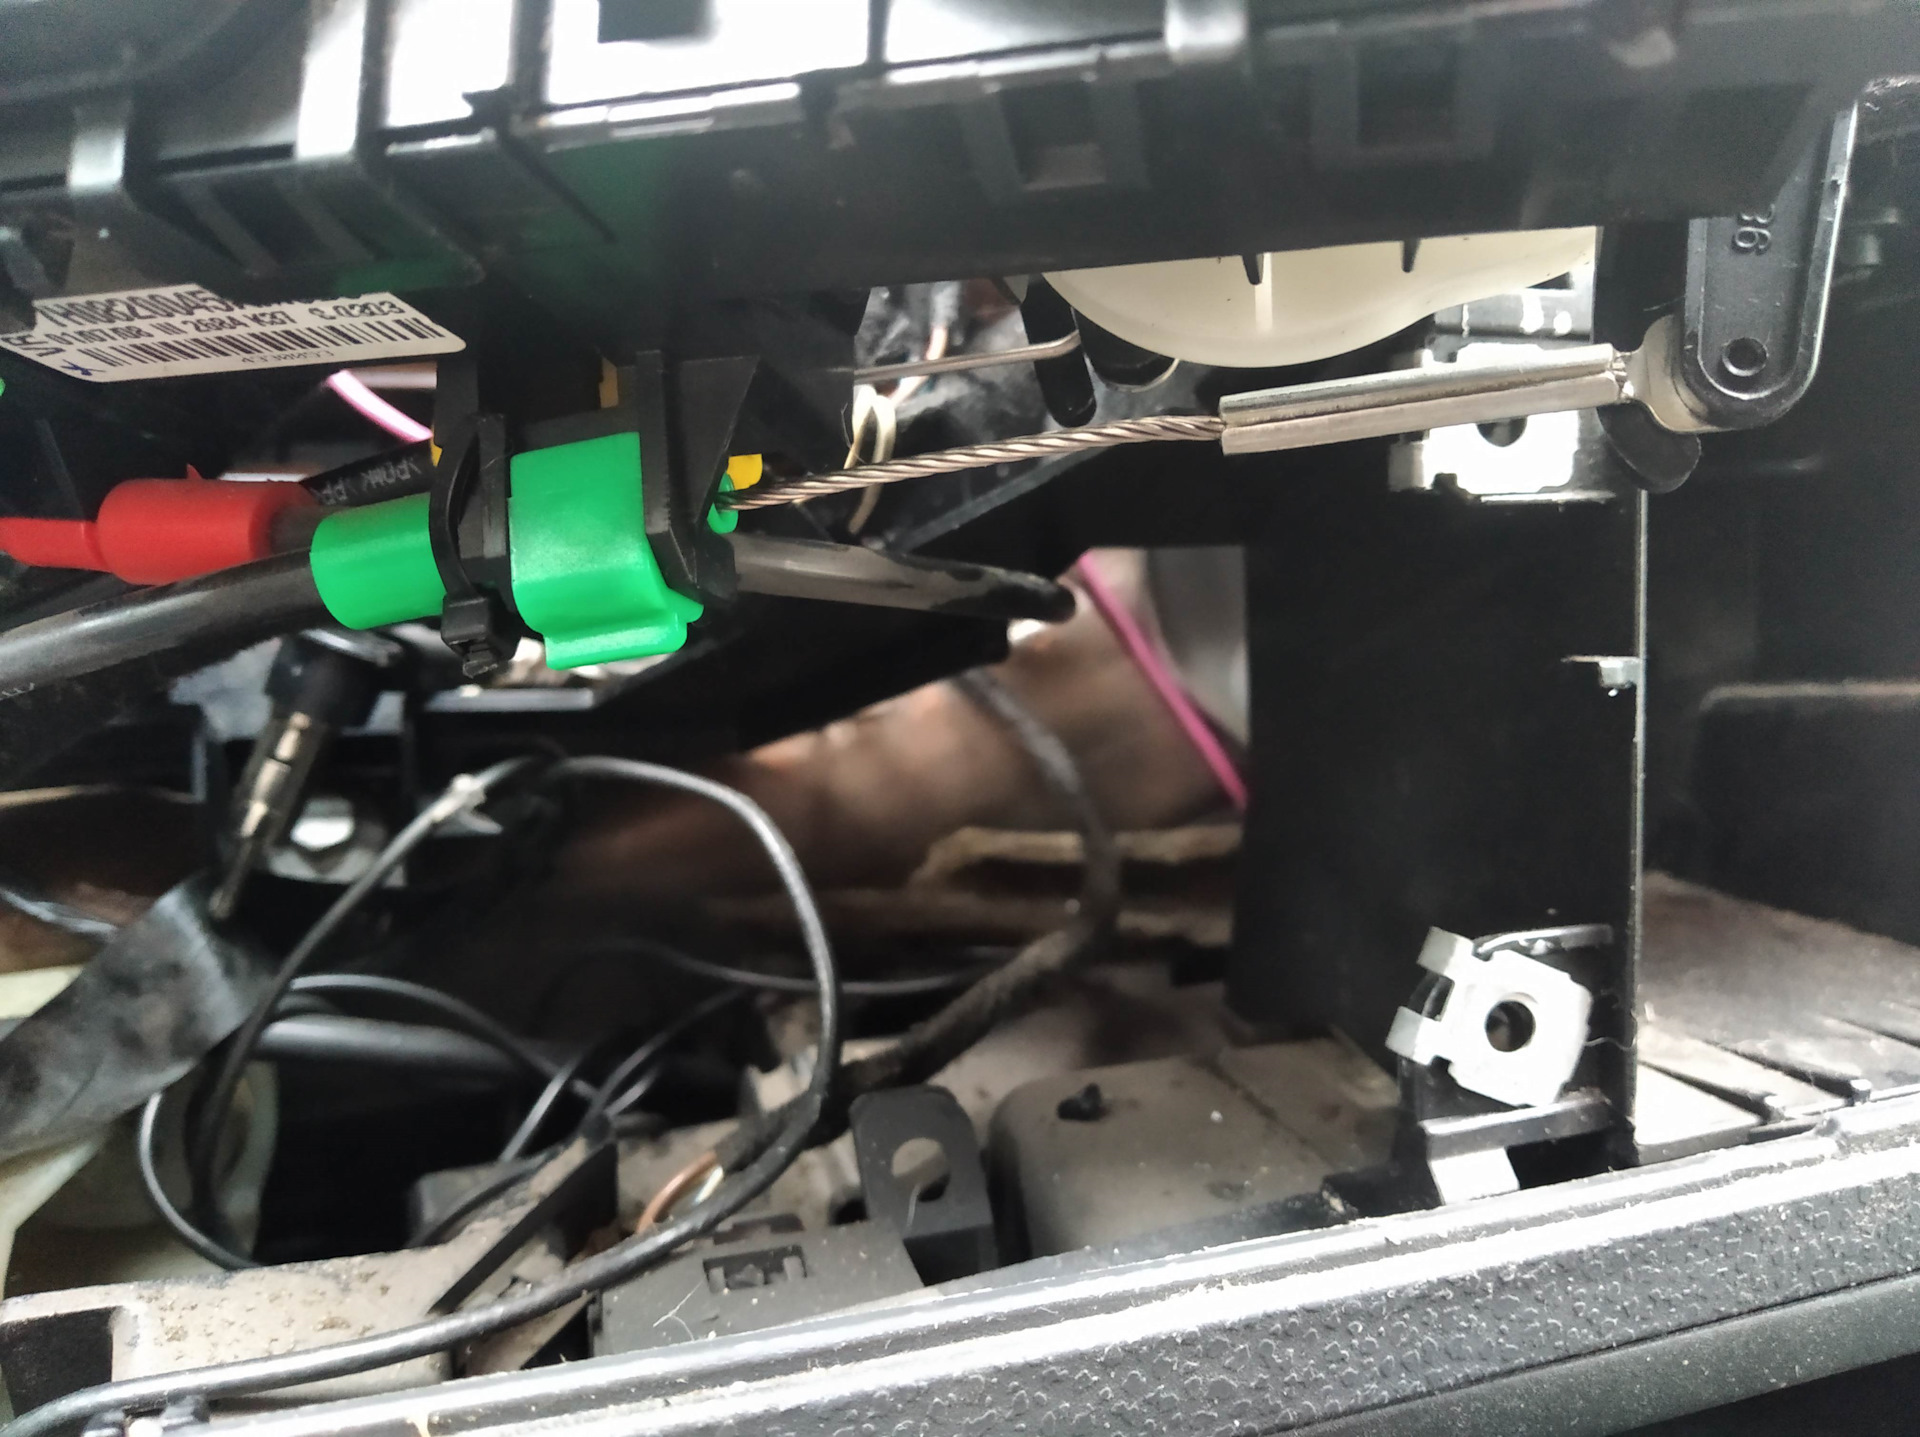 Перестал дуть теплый воздух. Тросик управления климат-контролем Geely. Battery Power 36 v прибор машину обдувать воздухом. Маленький обдув воздухом от электричество. VW t5 не дует воздух на стекло.